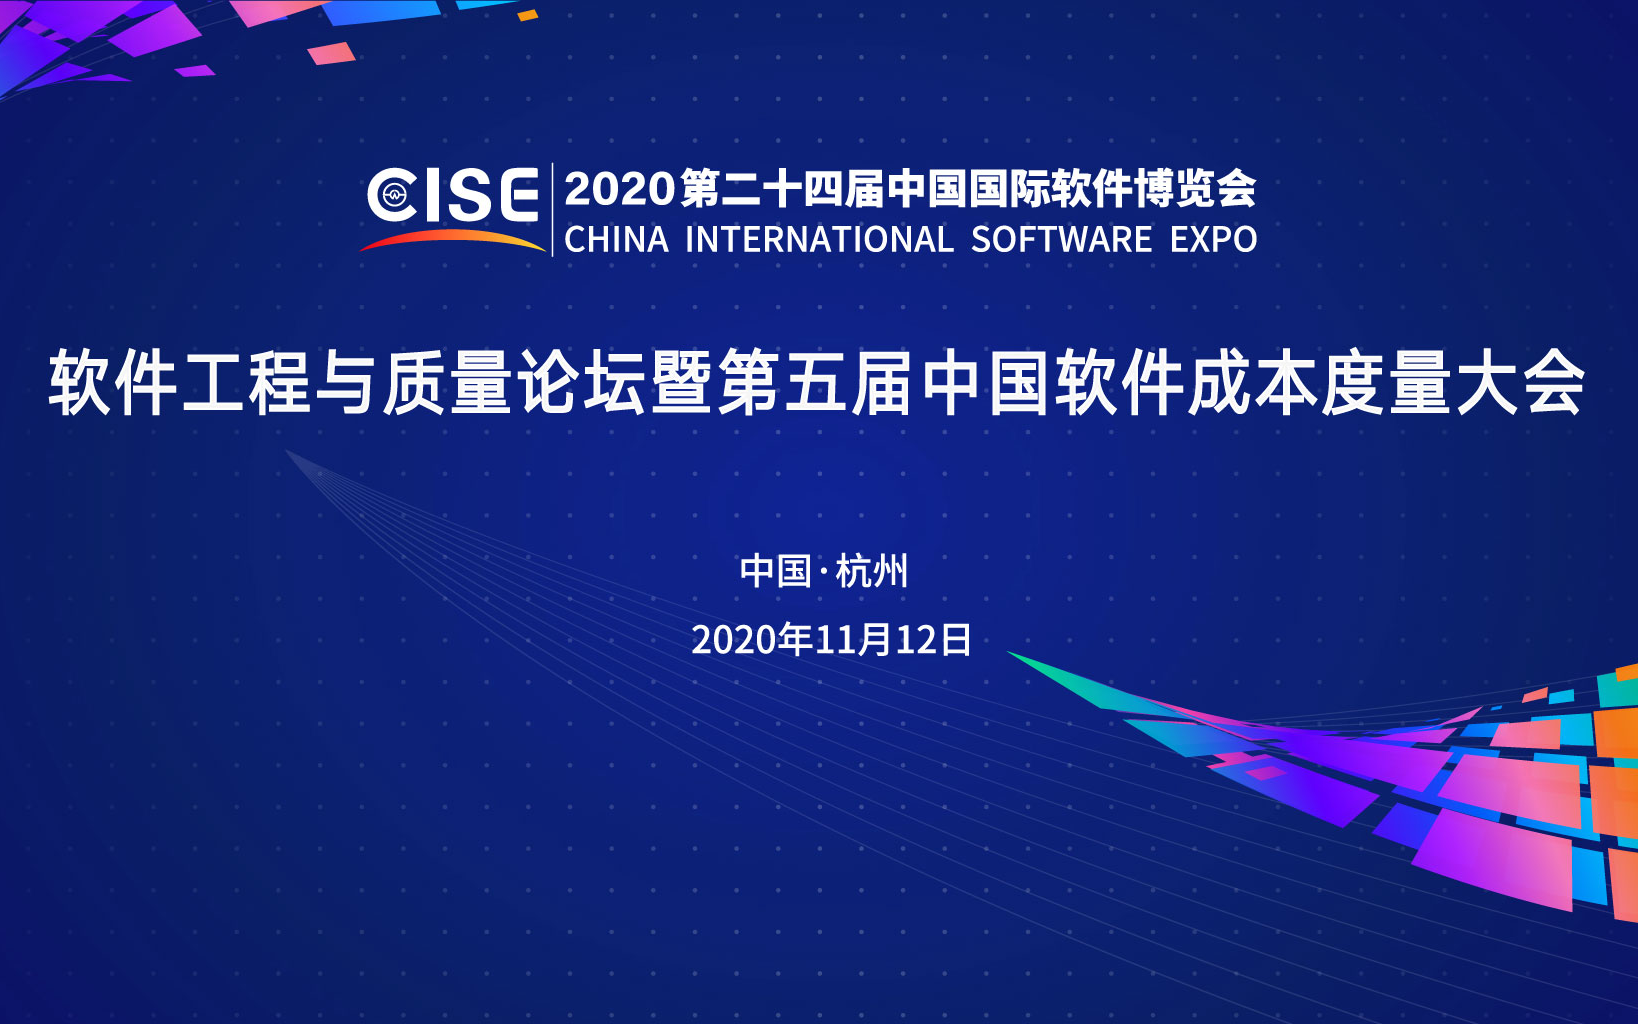 第二十四届中国国际软件博览会 软件工程与质量论坛暨第五届中国软件成本度量大会